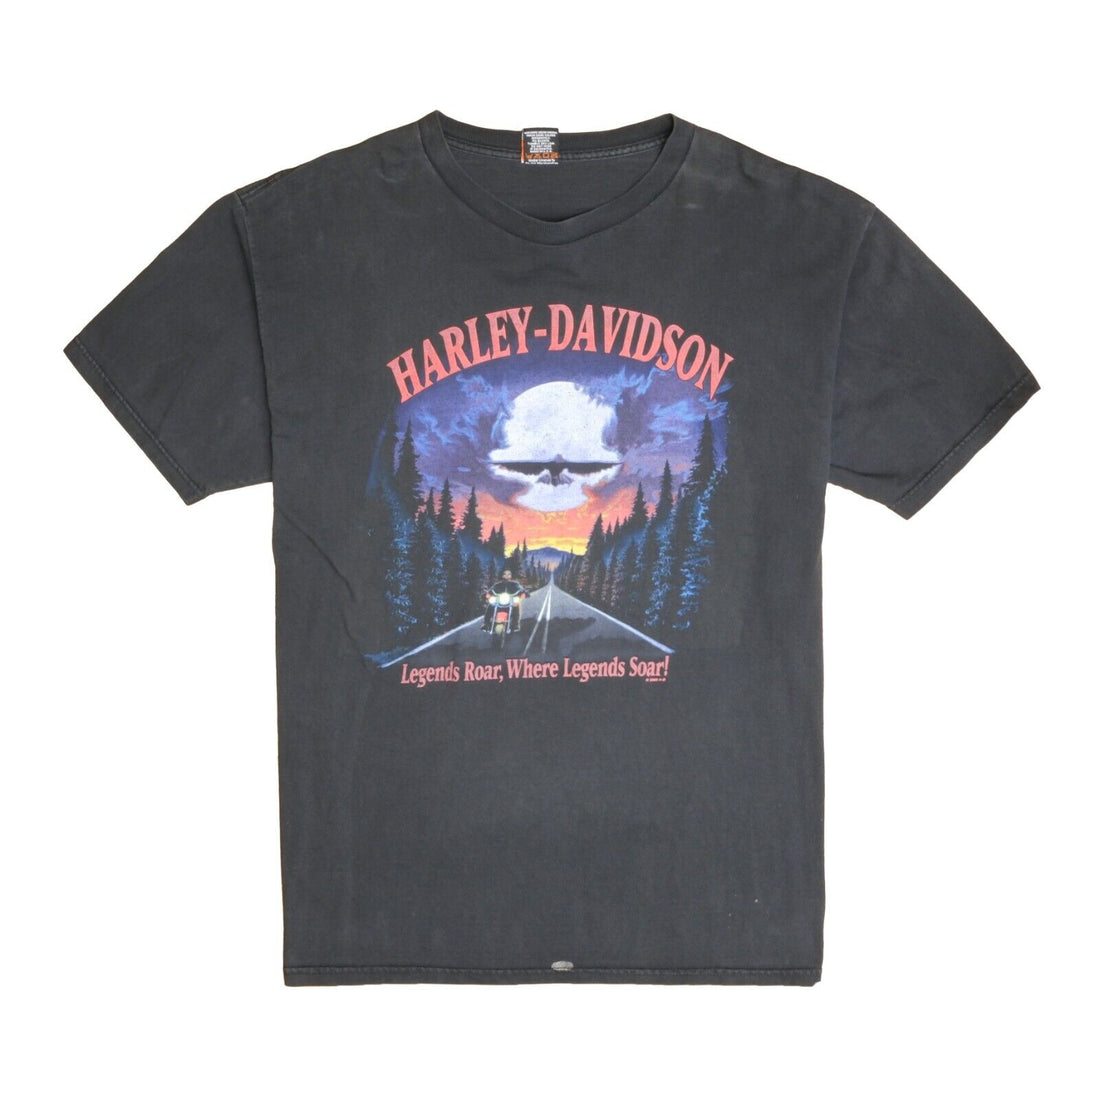 Vintage Harley Davidson Legends Roar Soar T-Shirt Size XL Black 2002